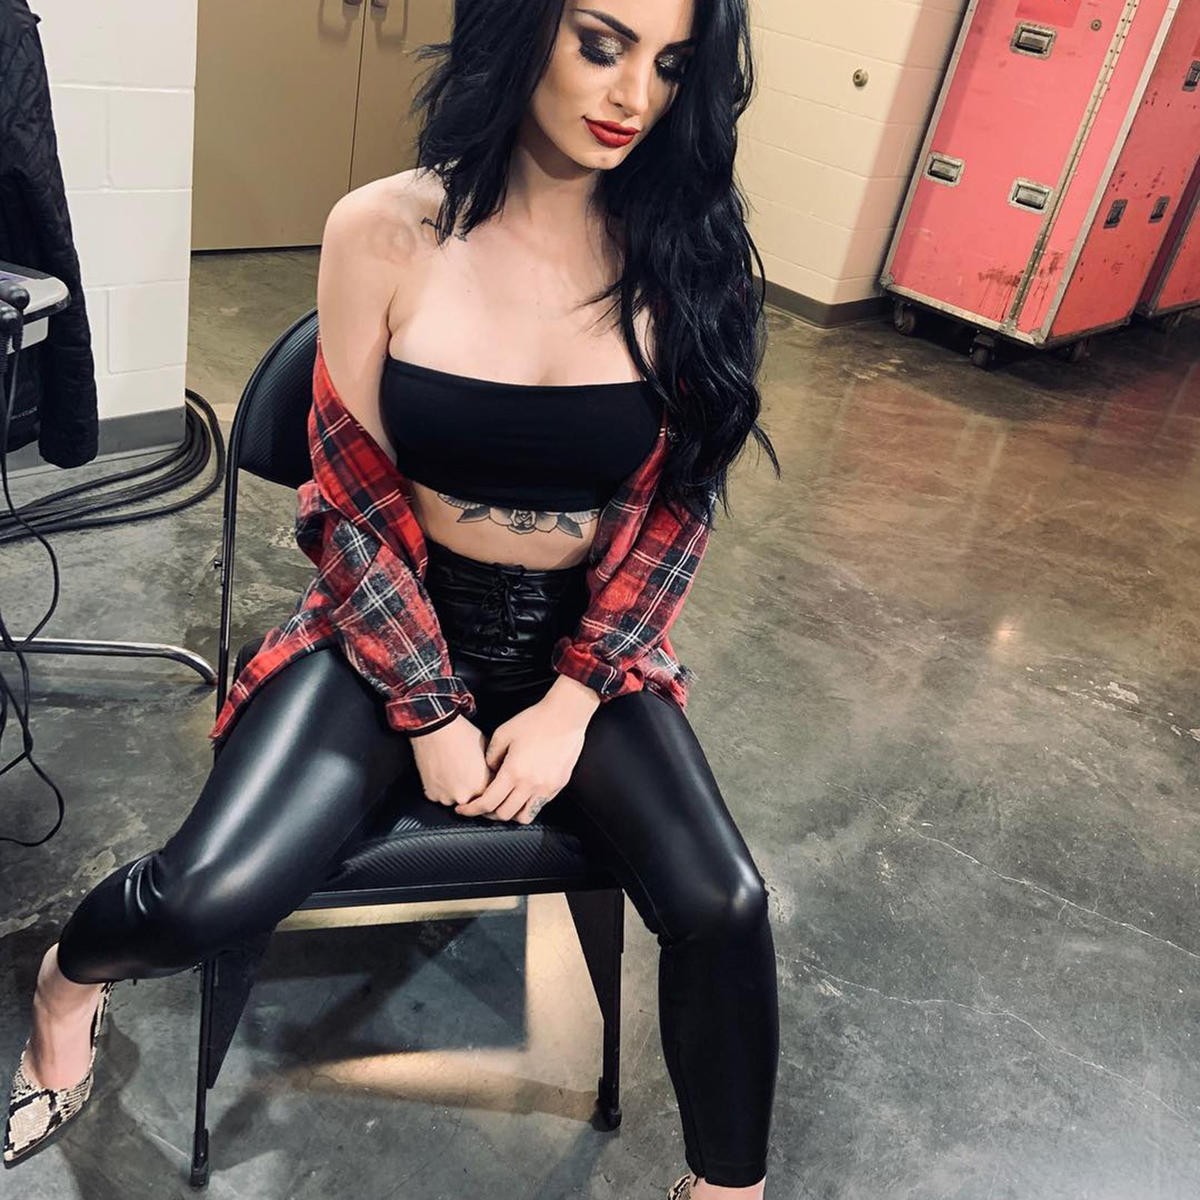 Saraya ‘Paige’ Bevis, campeã da WWE (Foto: Reprodução/Instagram)